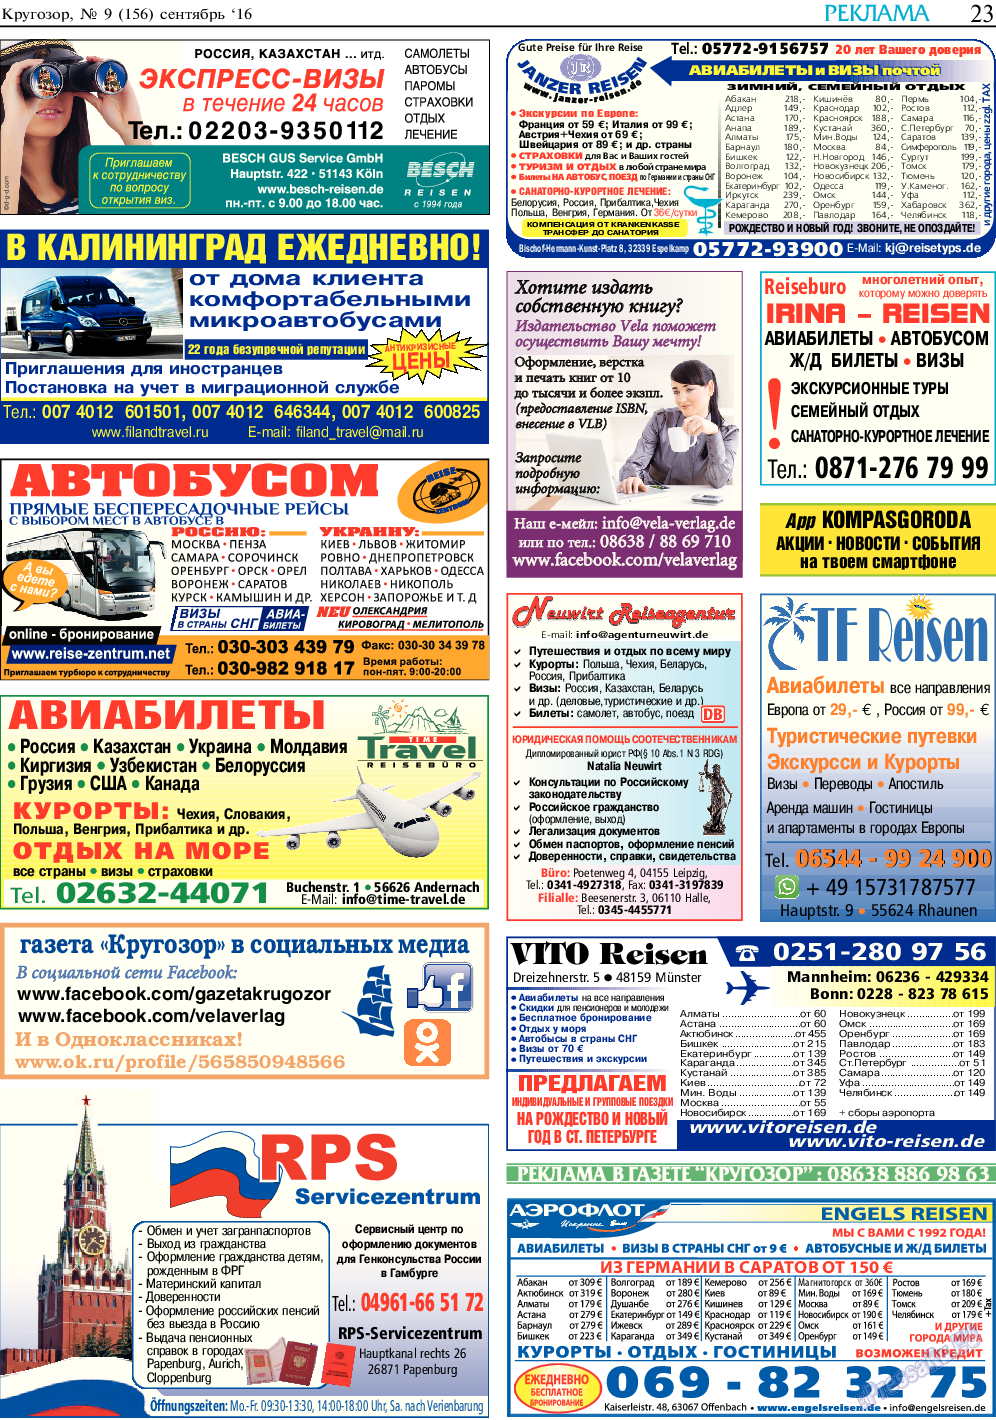 Кругозор, газета. 2016 №9 стр.23